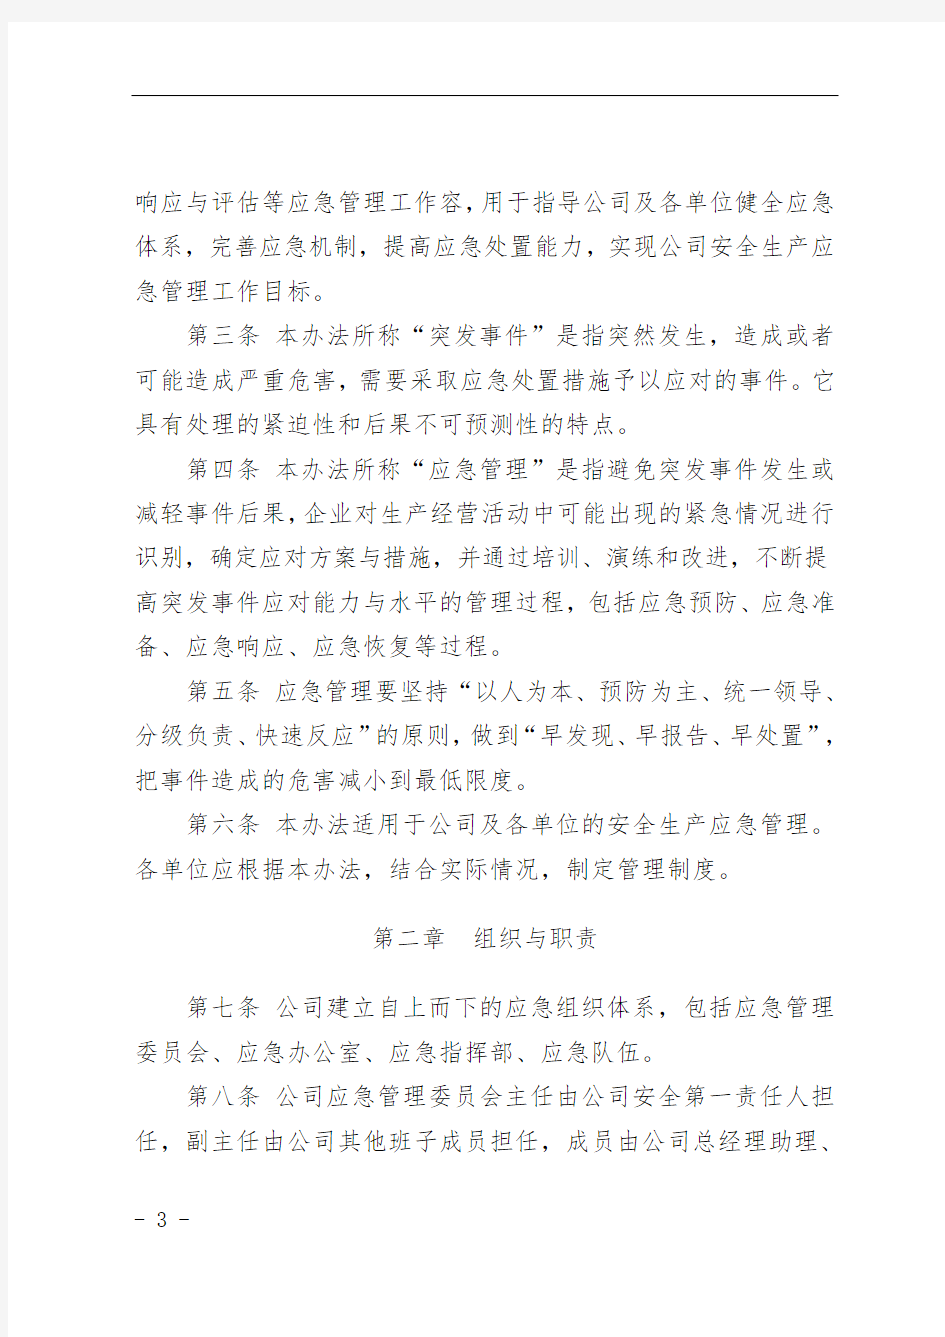 神华国能集团有限公司煤矿安全生产应急管理办法